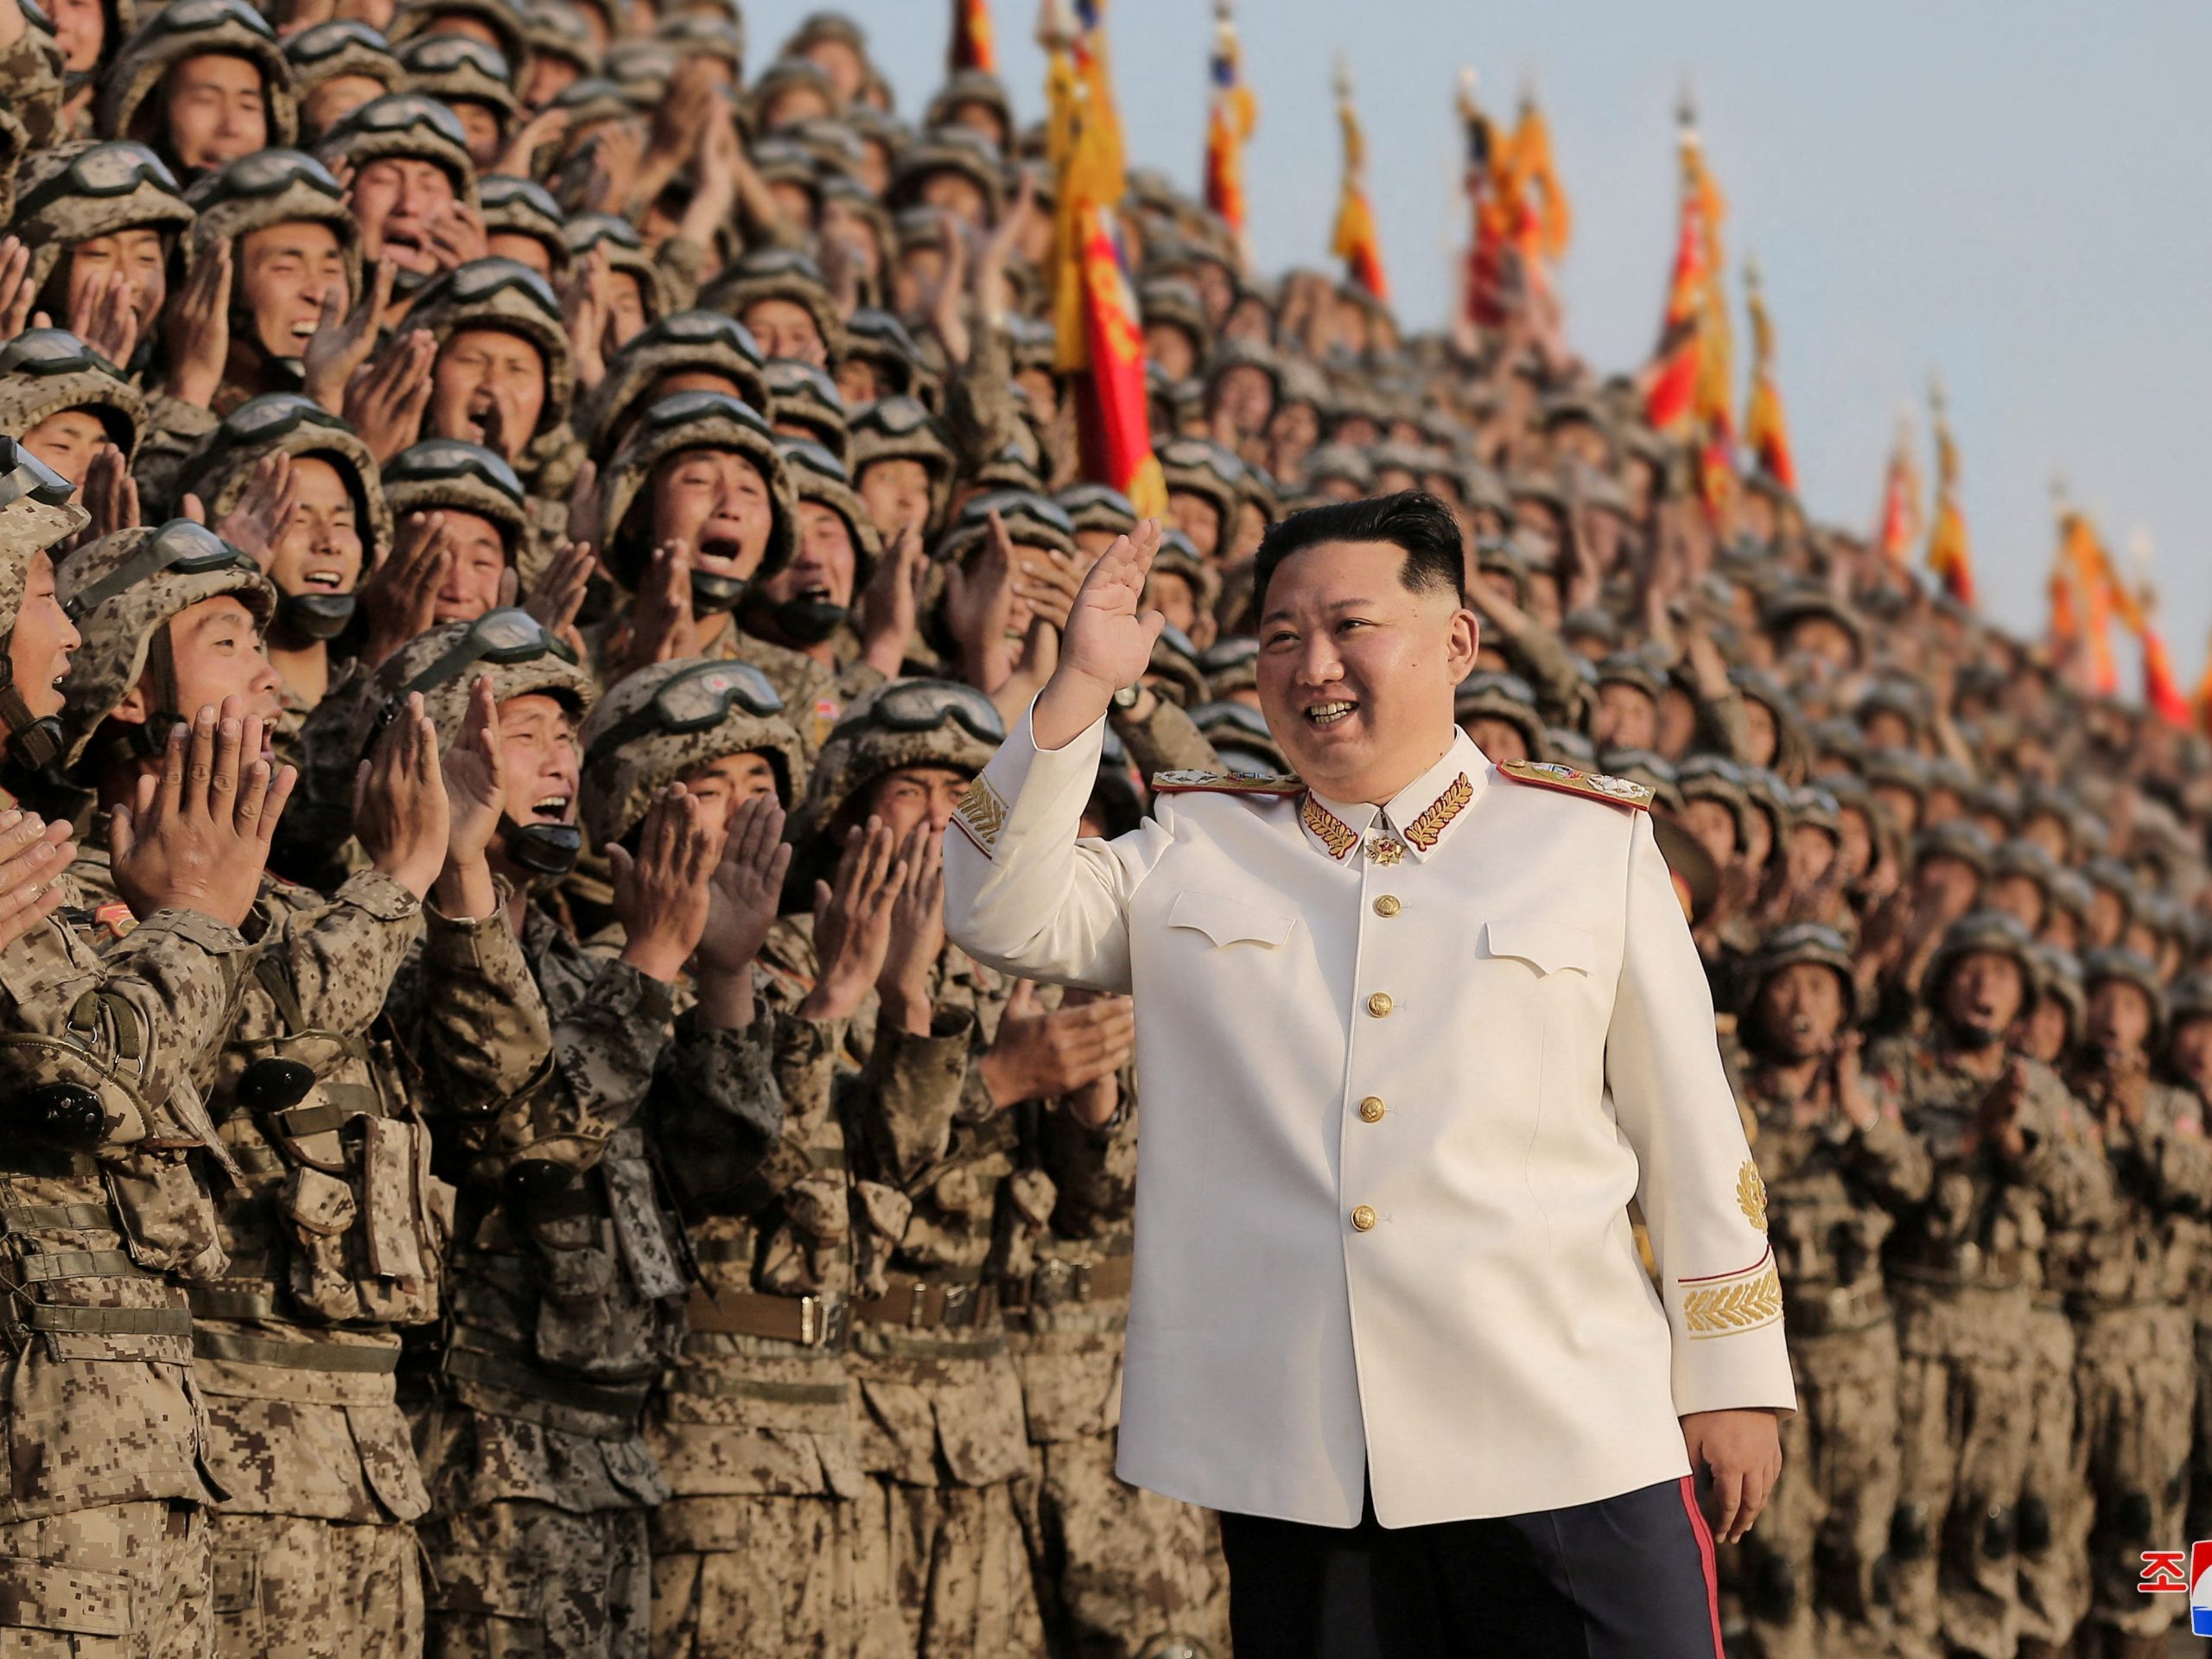 De Noord-Koreaanse leider Kim Jong Un tijdens een militaire parade in Pyongyang. 